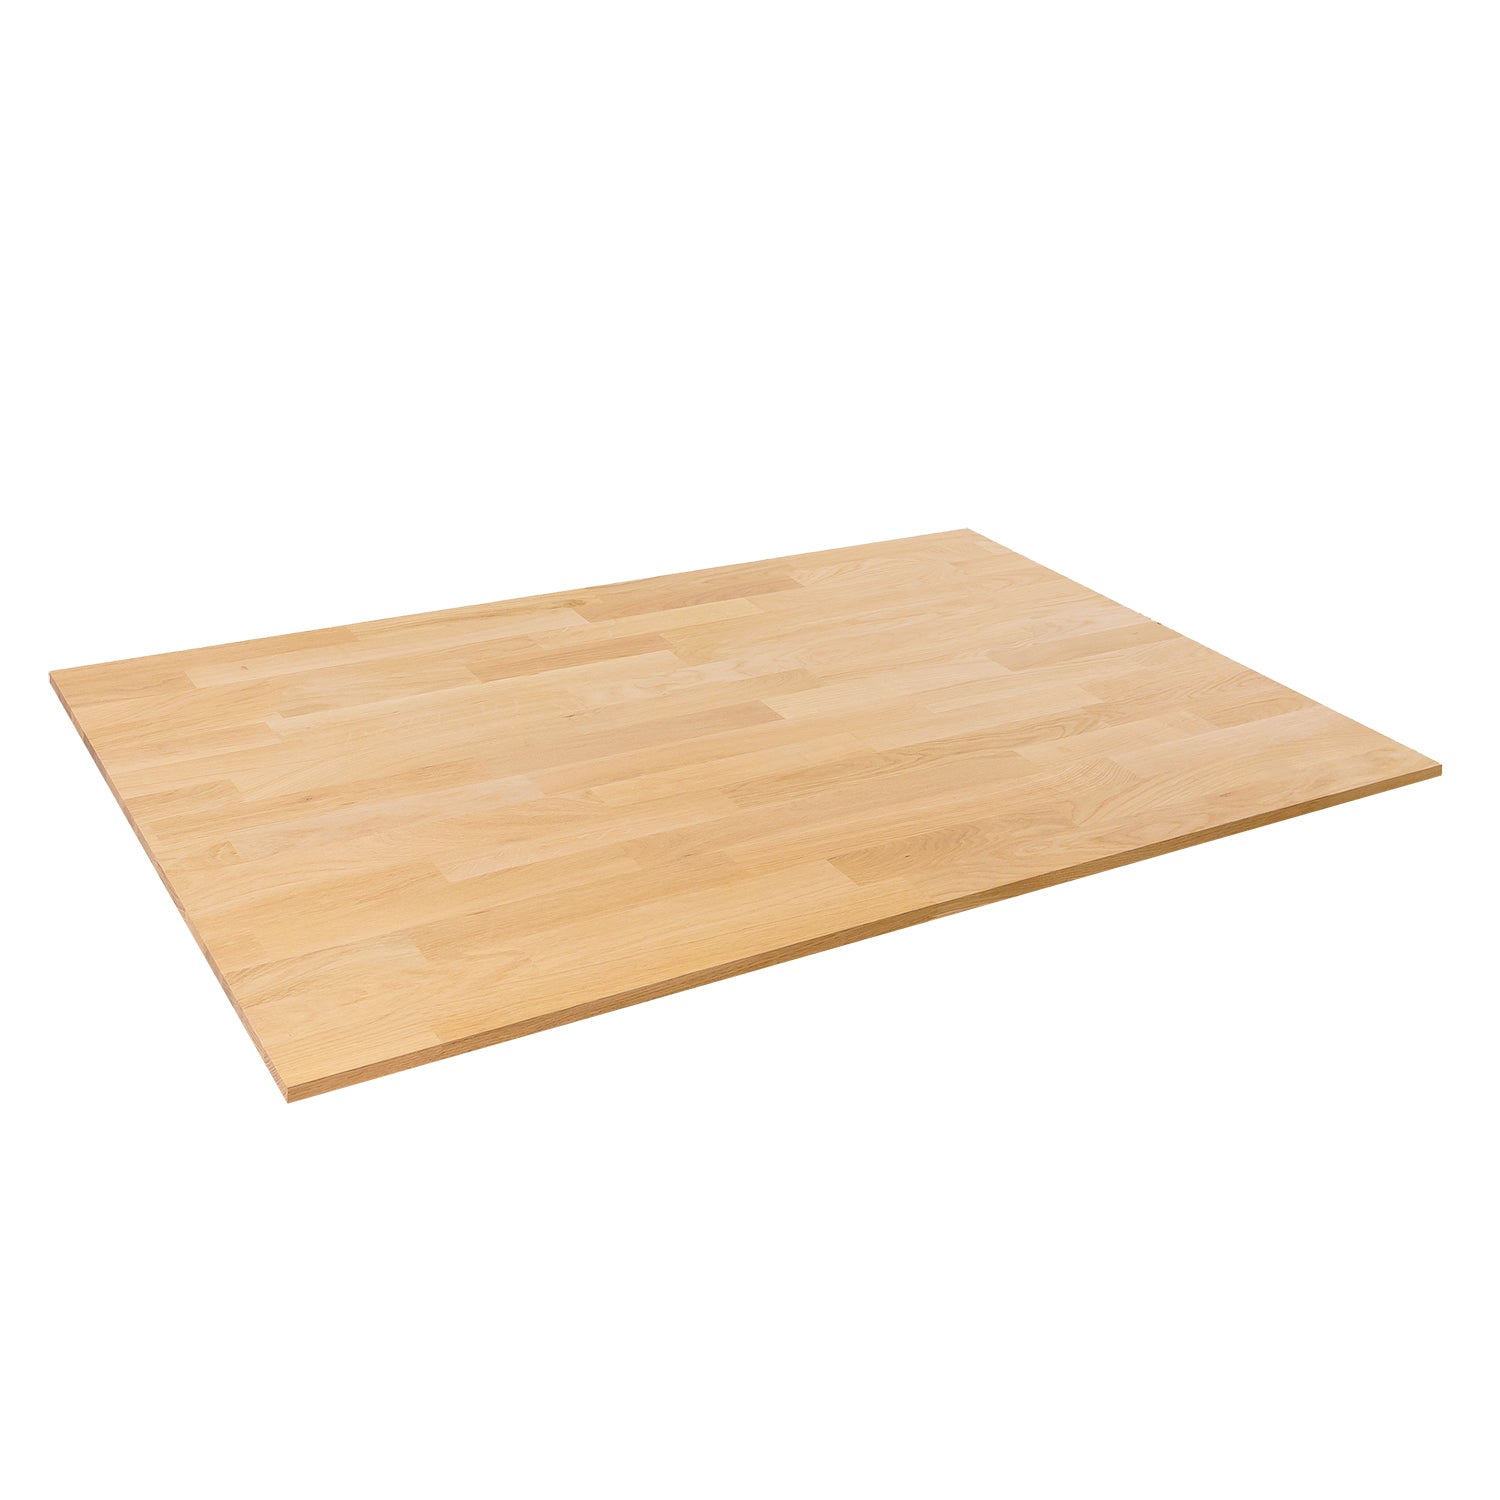 Slimline Oak Solid Wood Desktop - 18mm thick